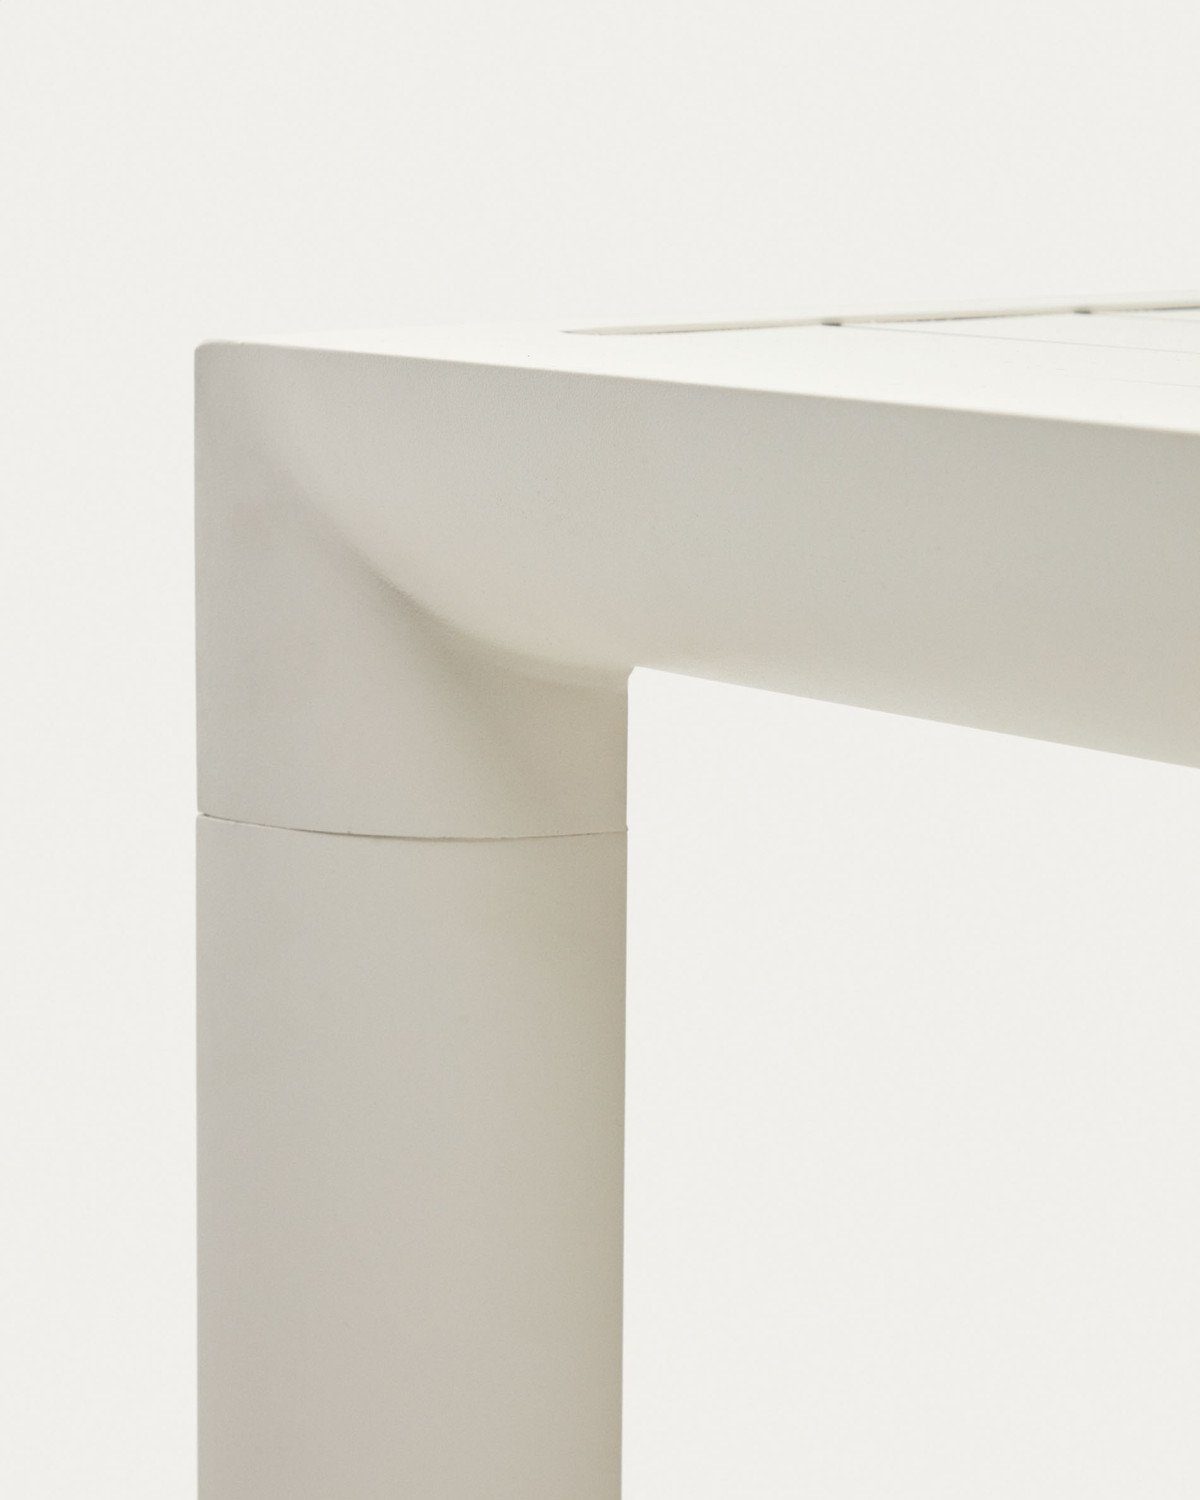 Aluminium Culip Esstisch Outdoor Natur24 90x180x75cm Esstisch Gartentisch Tisch weiß